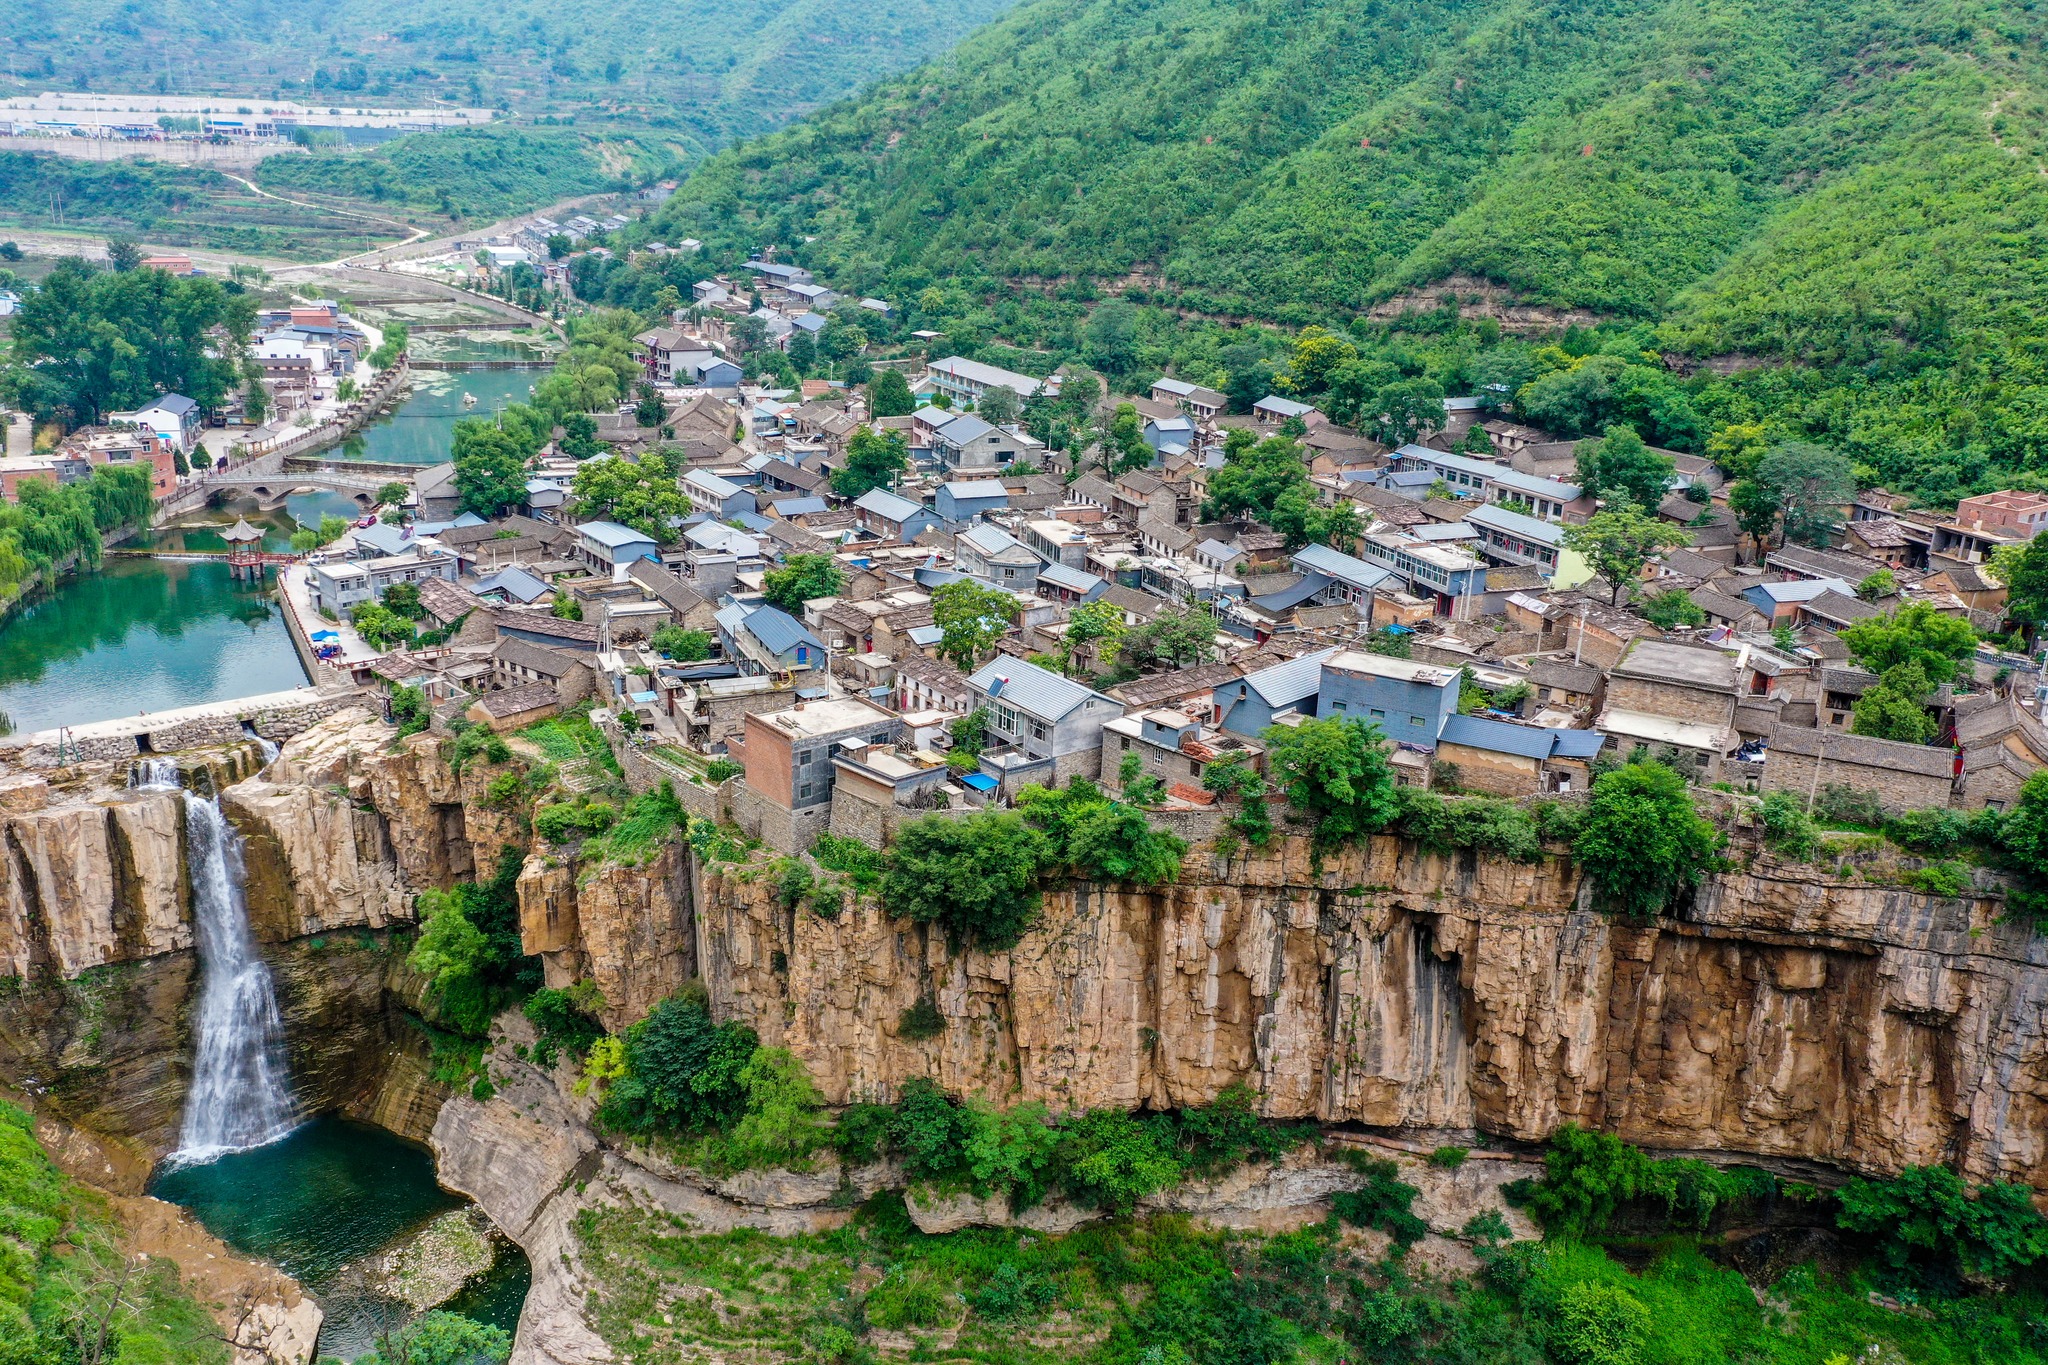 หมู่บ้านหงหนี (Hongni Village: 红泥村)